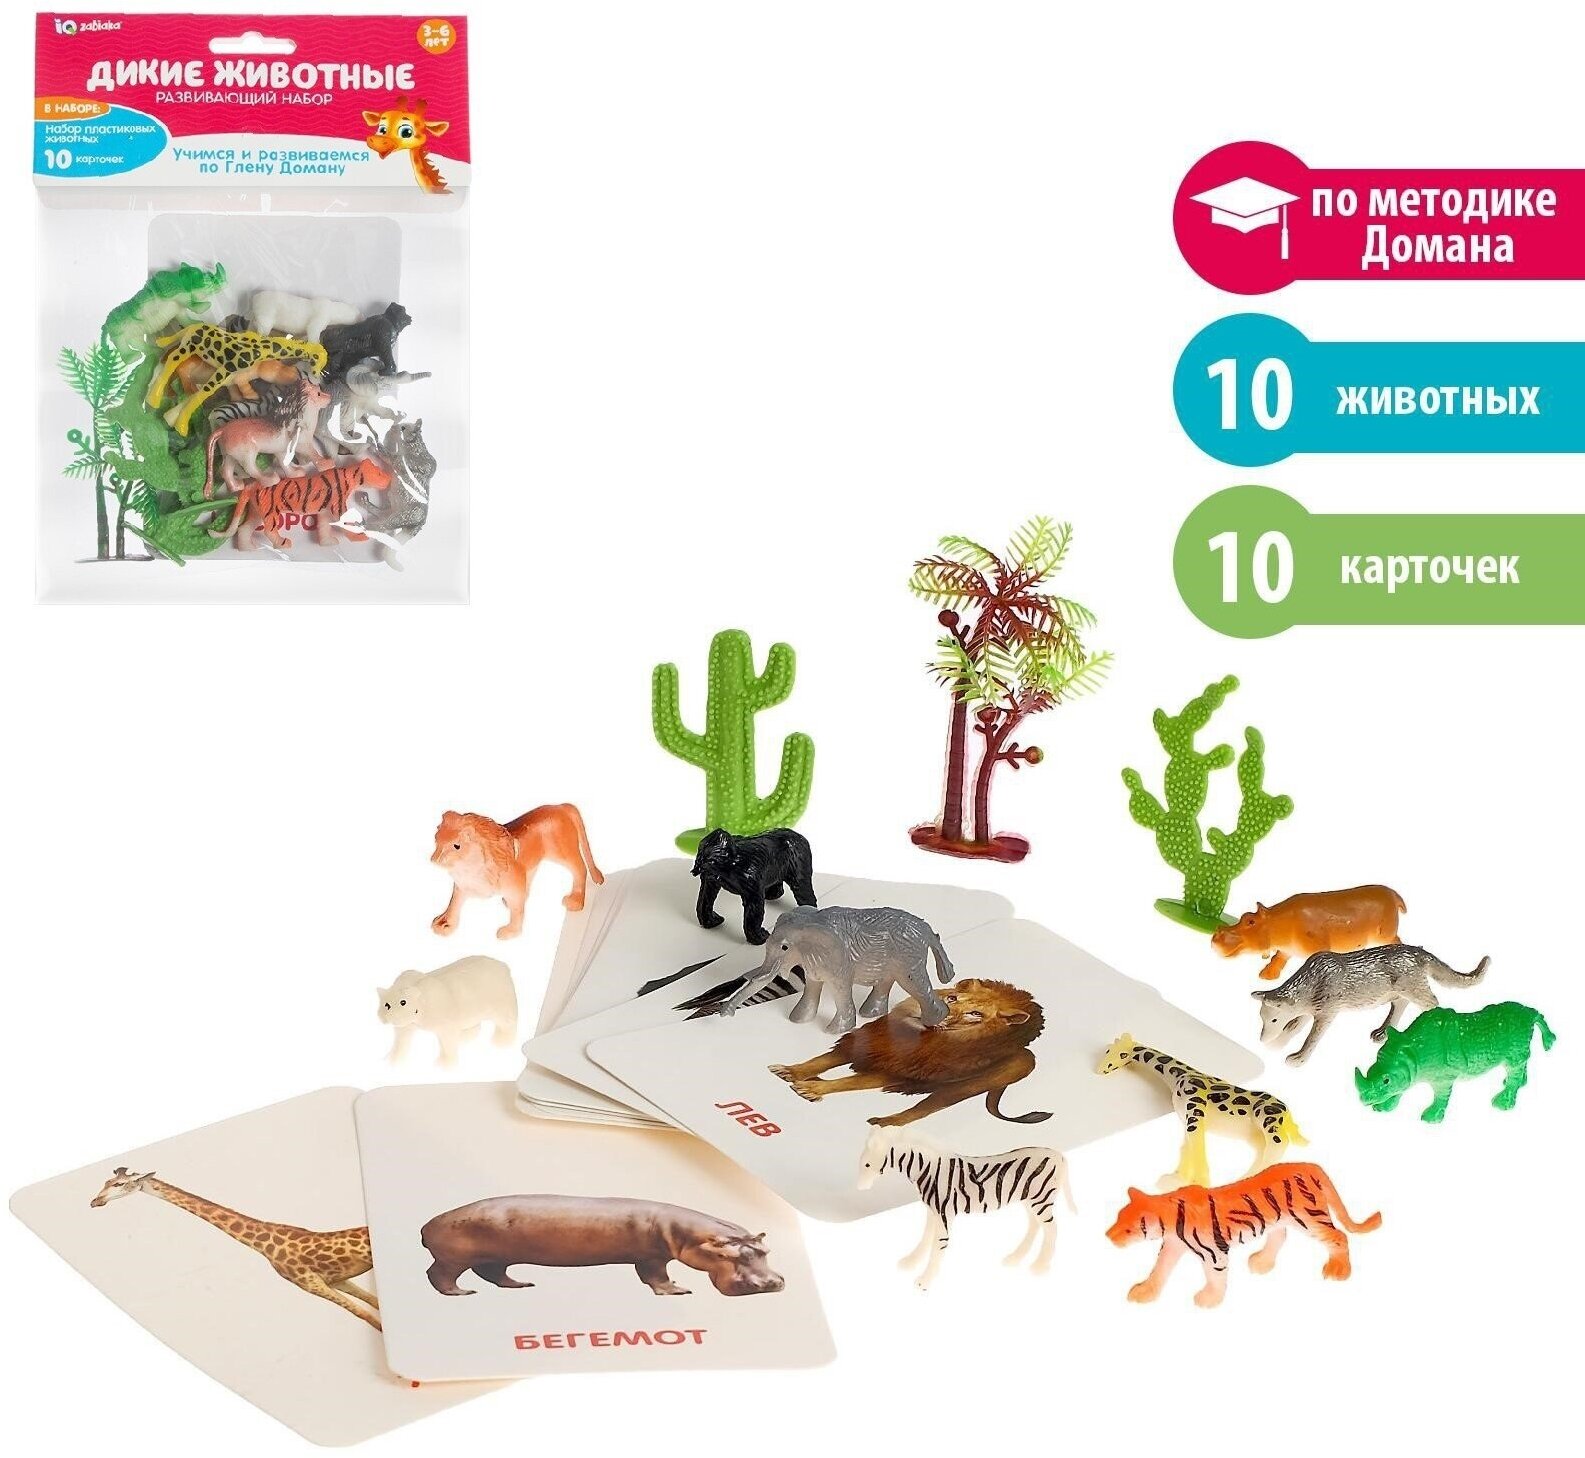 Развивающий набор "Дикие животные", 10 животных, 10 карточек, по методике Г. Домана, для детей и малышей